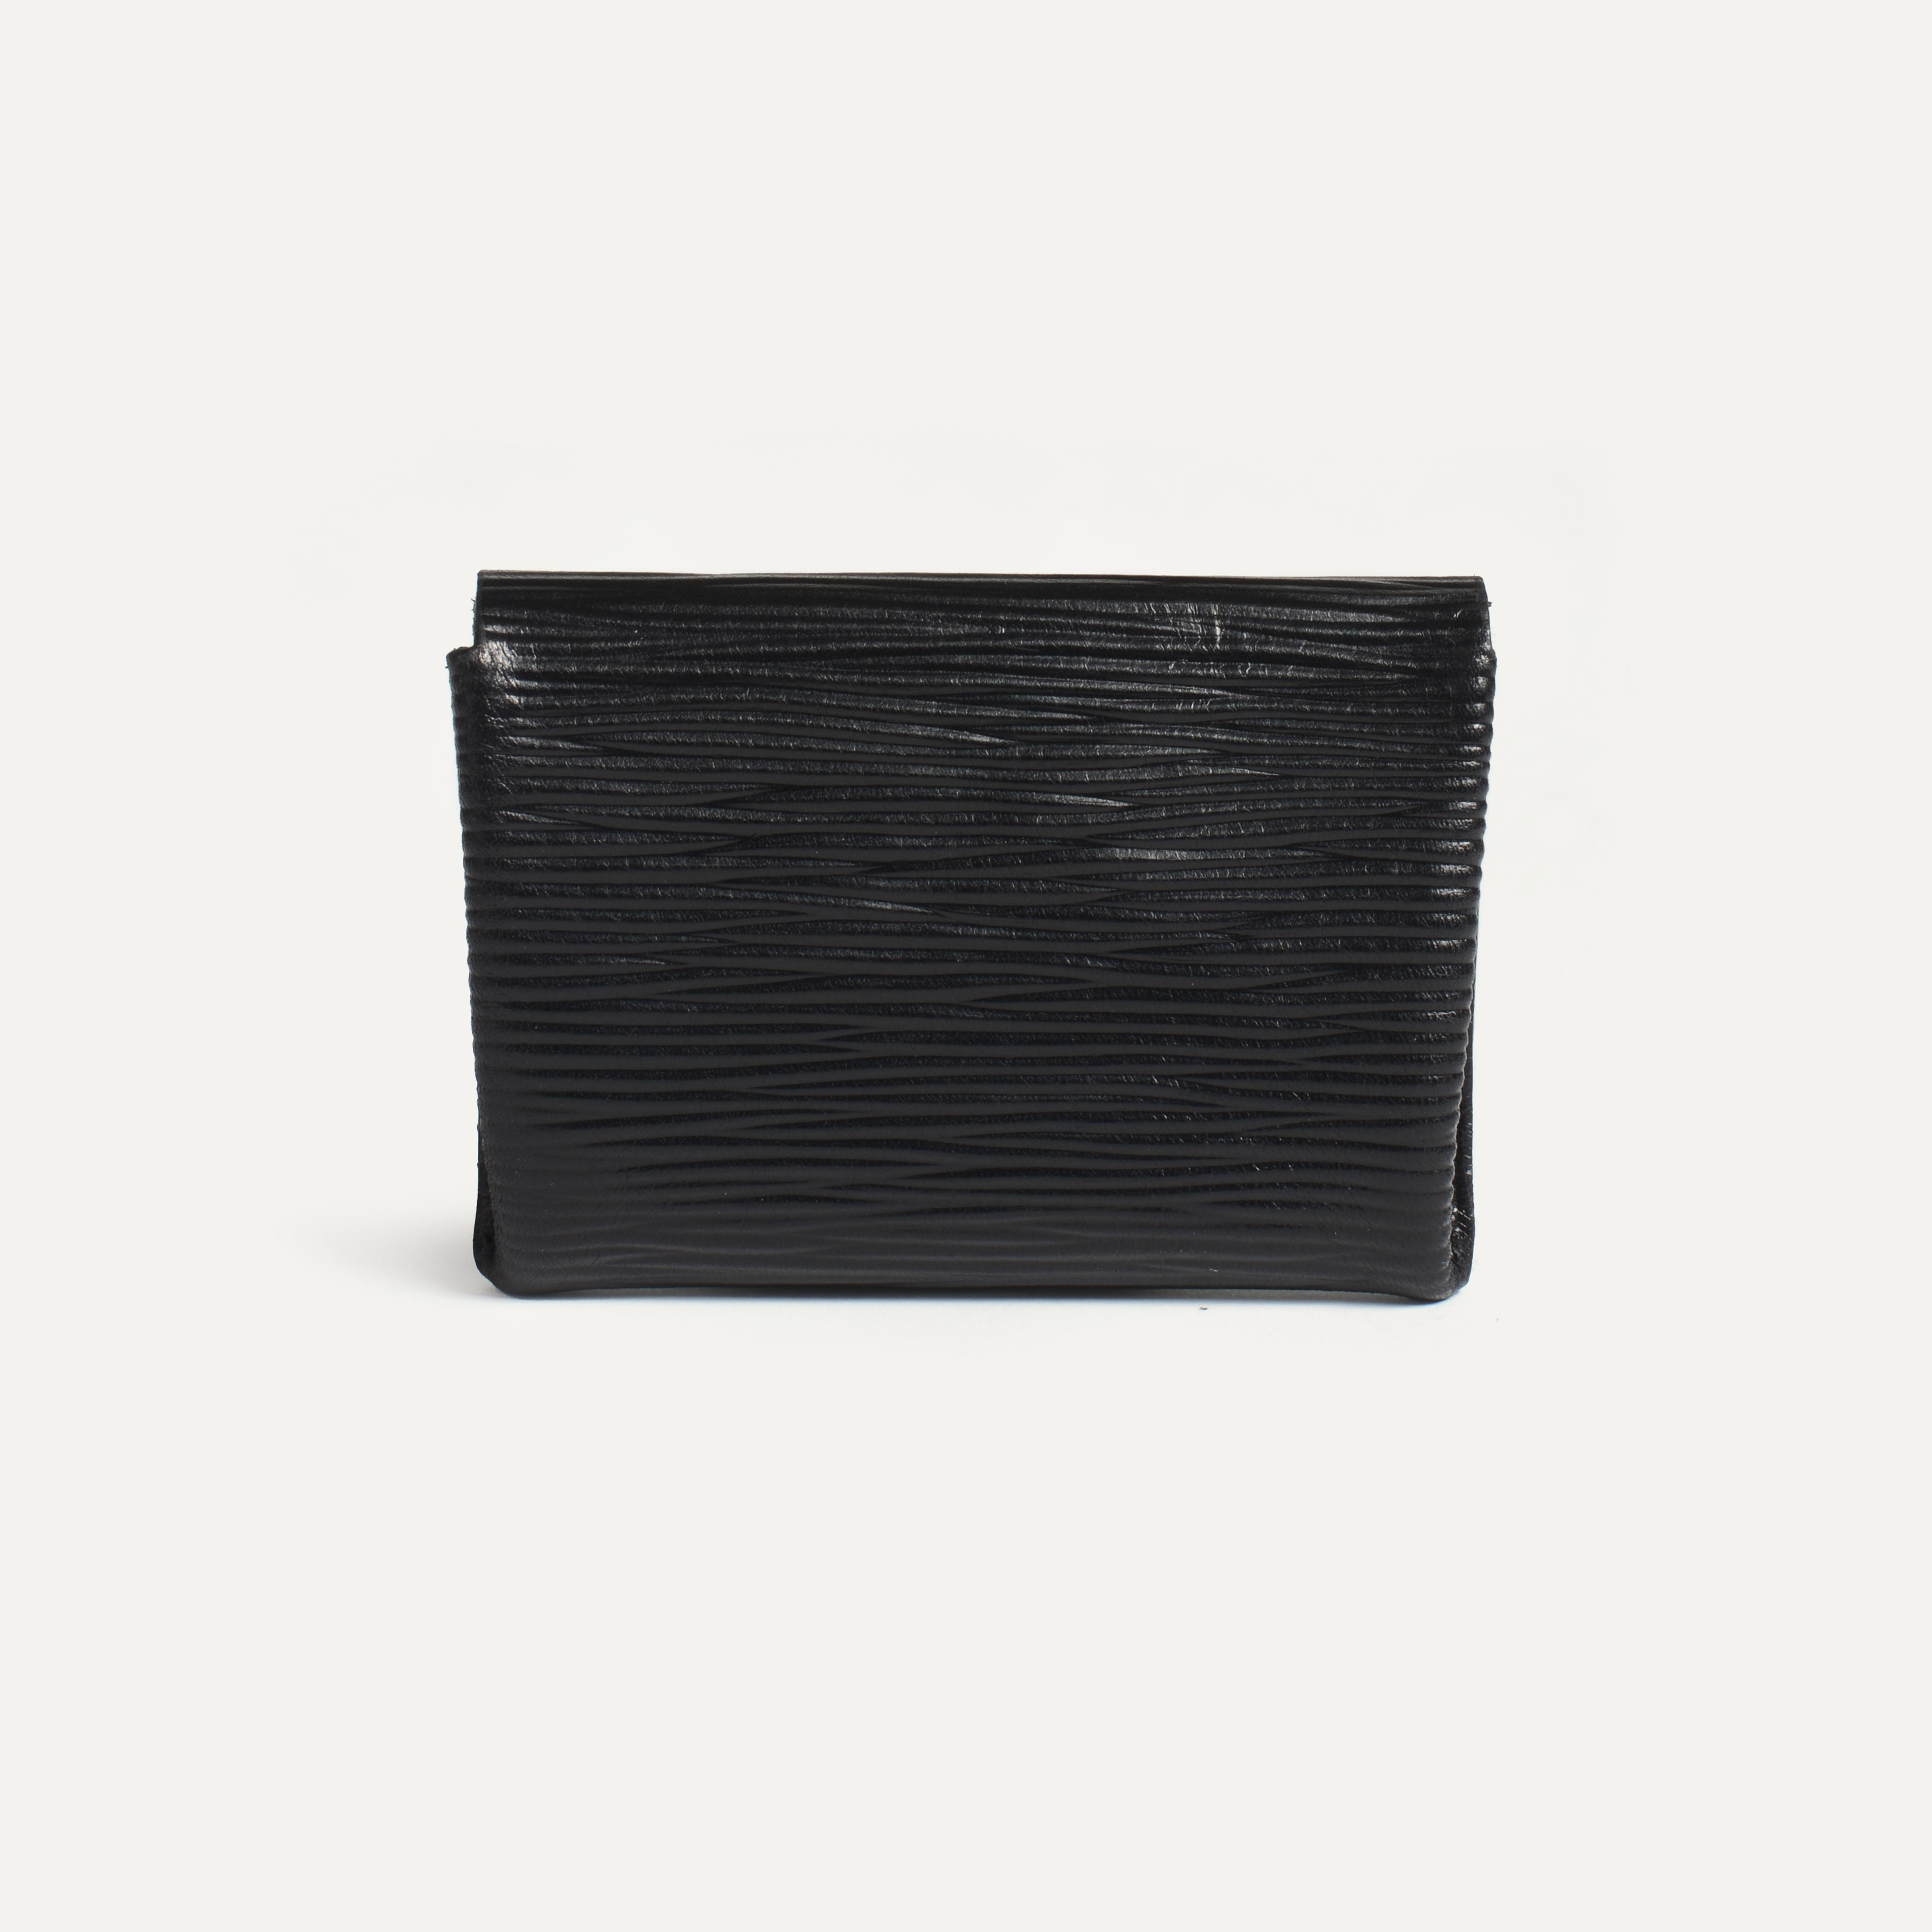 Talbin Shoemaker purse - black épi leather (image n°2)